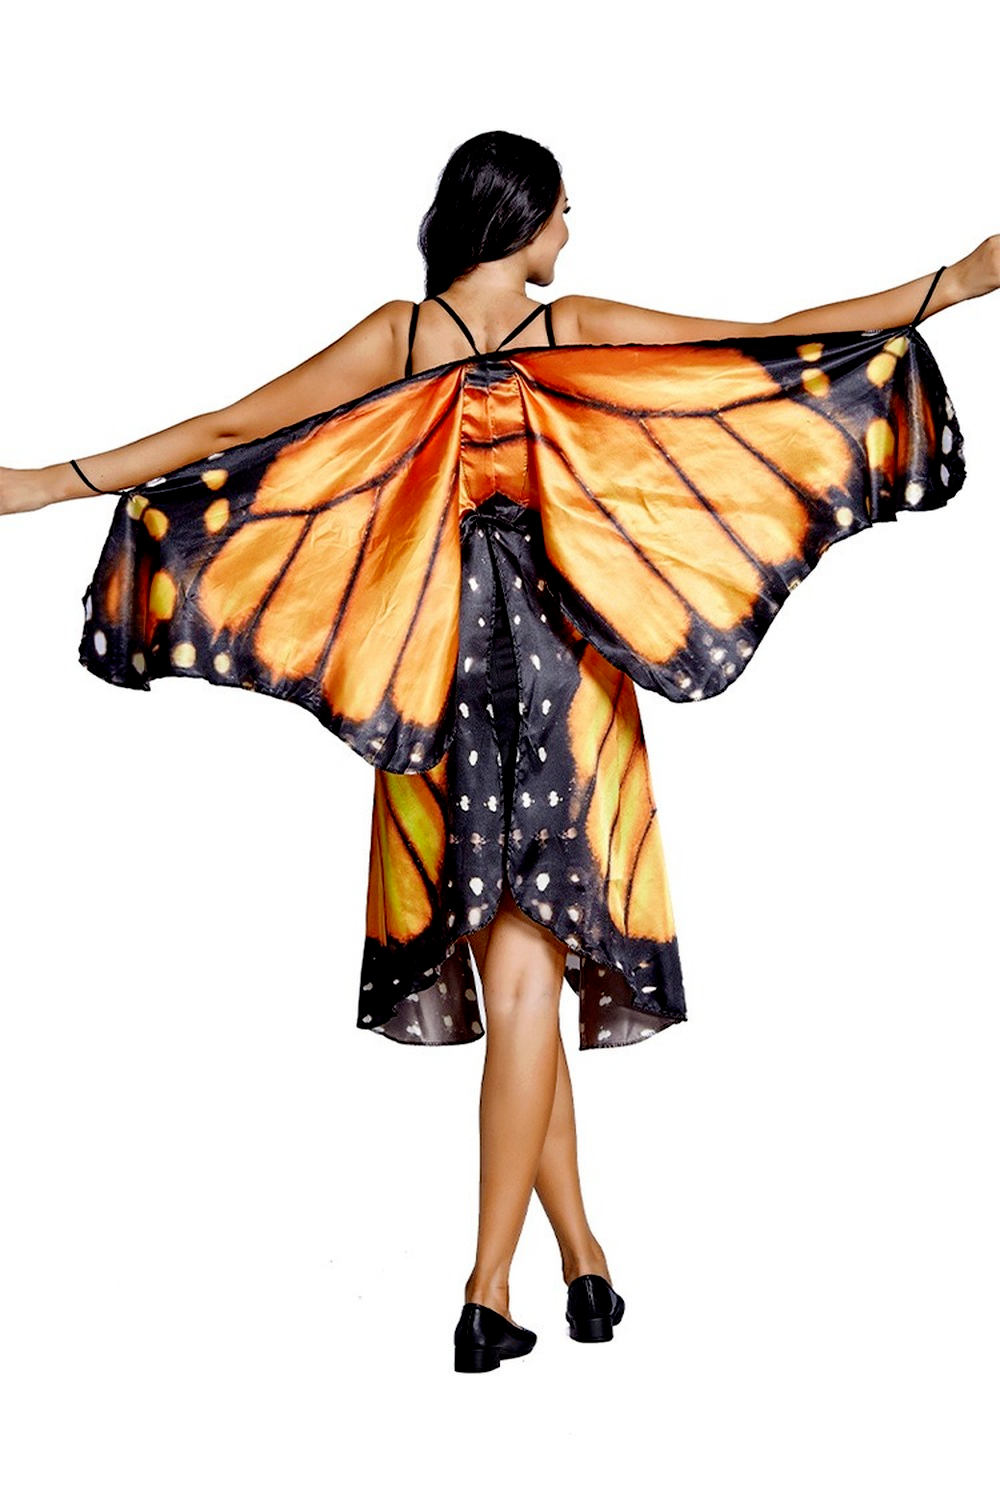 Women's Fairy Fancy Dress Hatler Bra Top Mini Skirt with Butterfly Wings  Costume | eBay